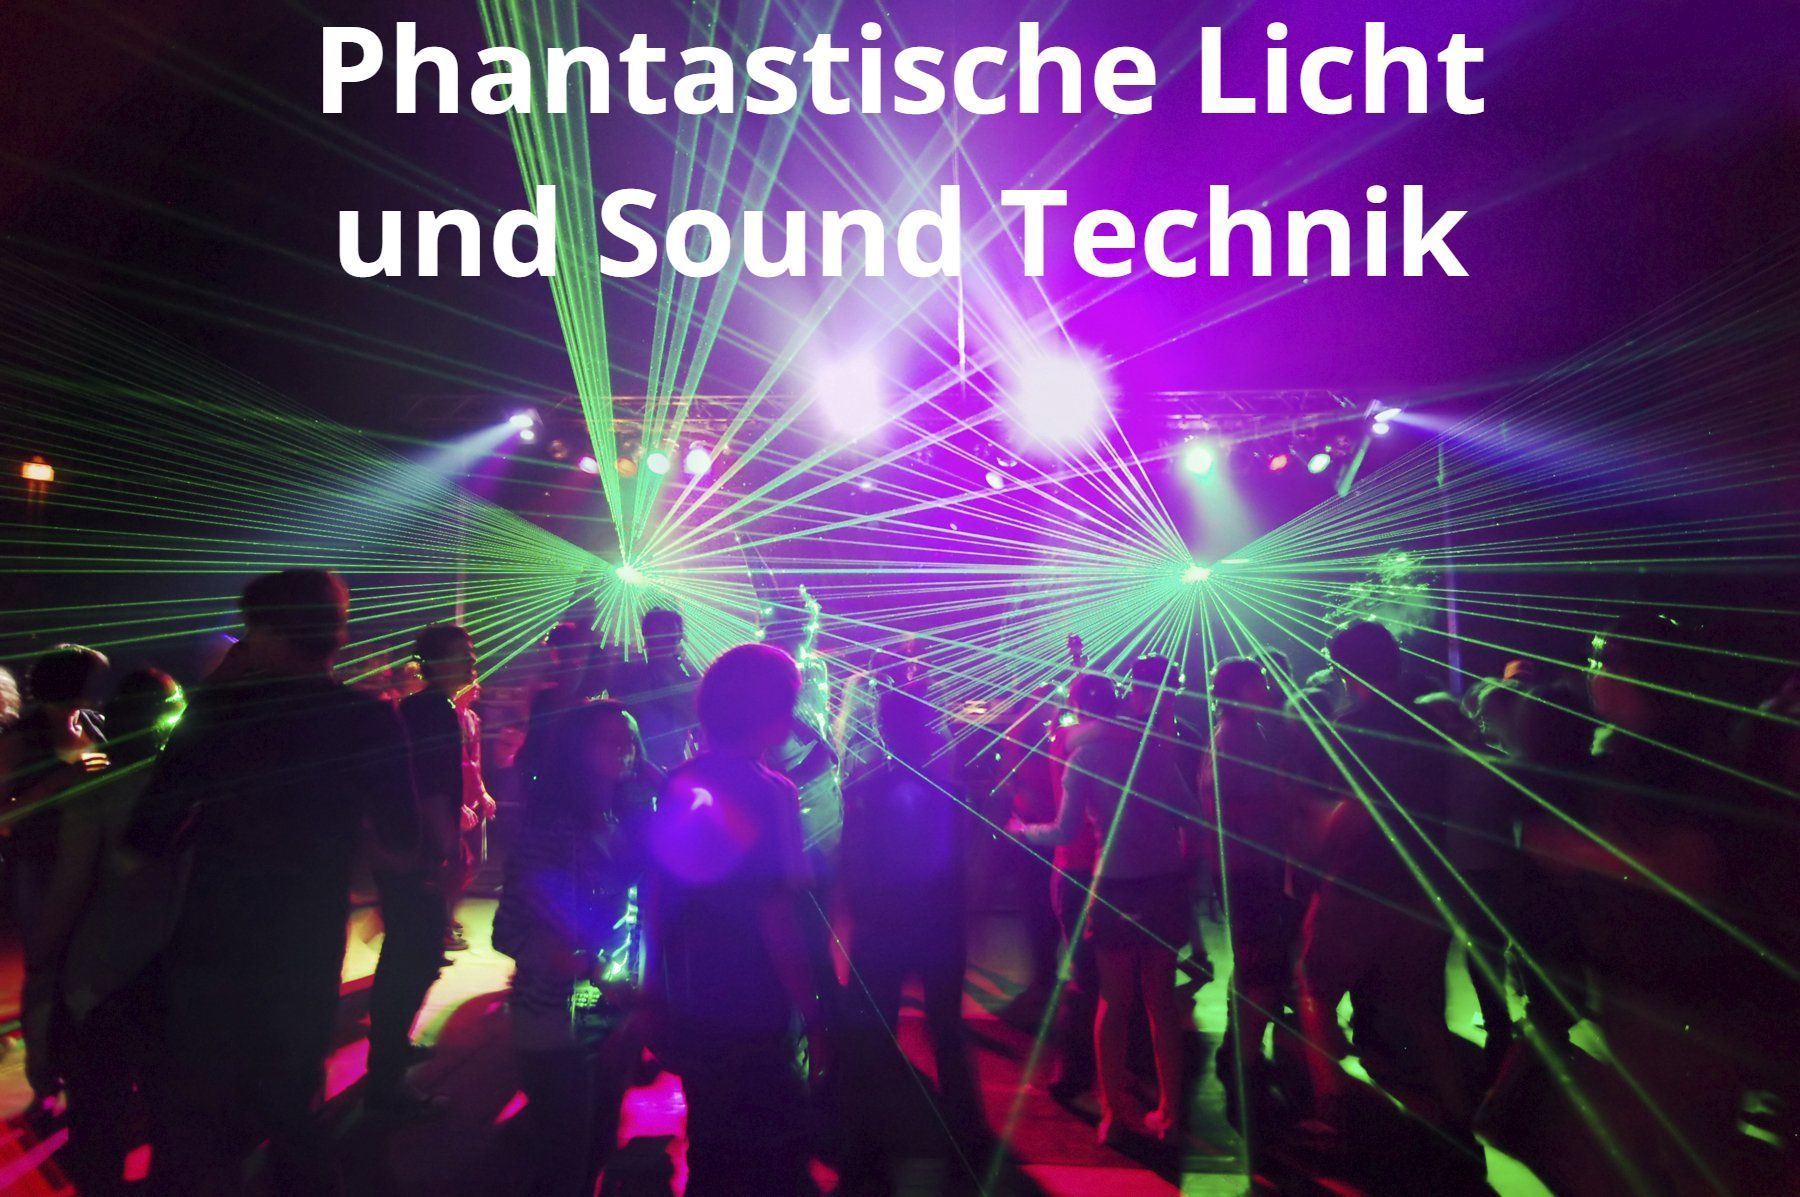 Phantastische Licht und Sound Technik